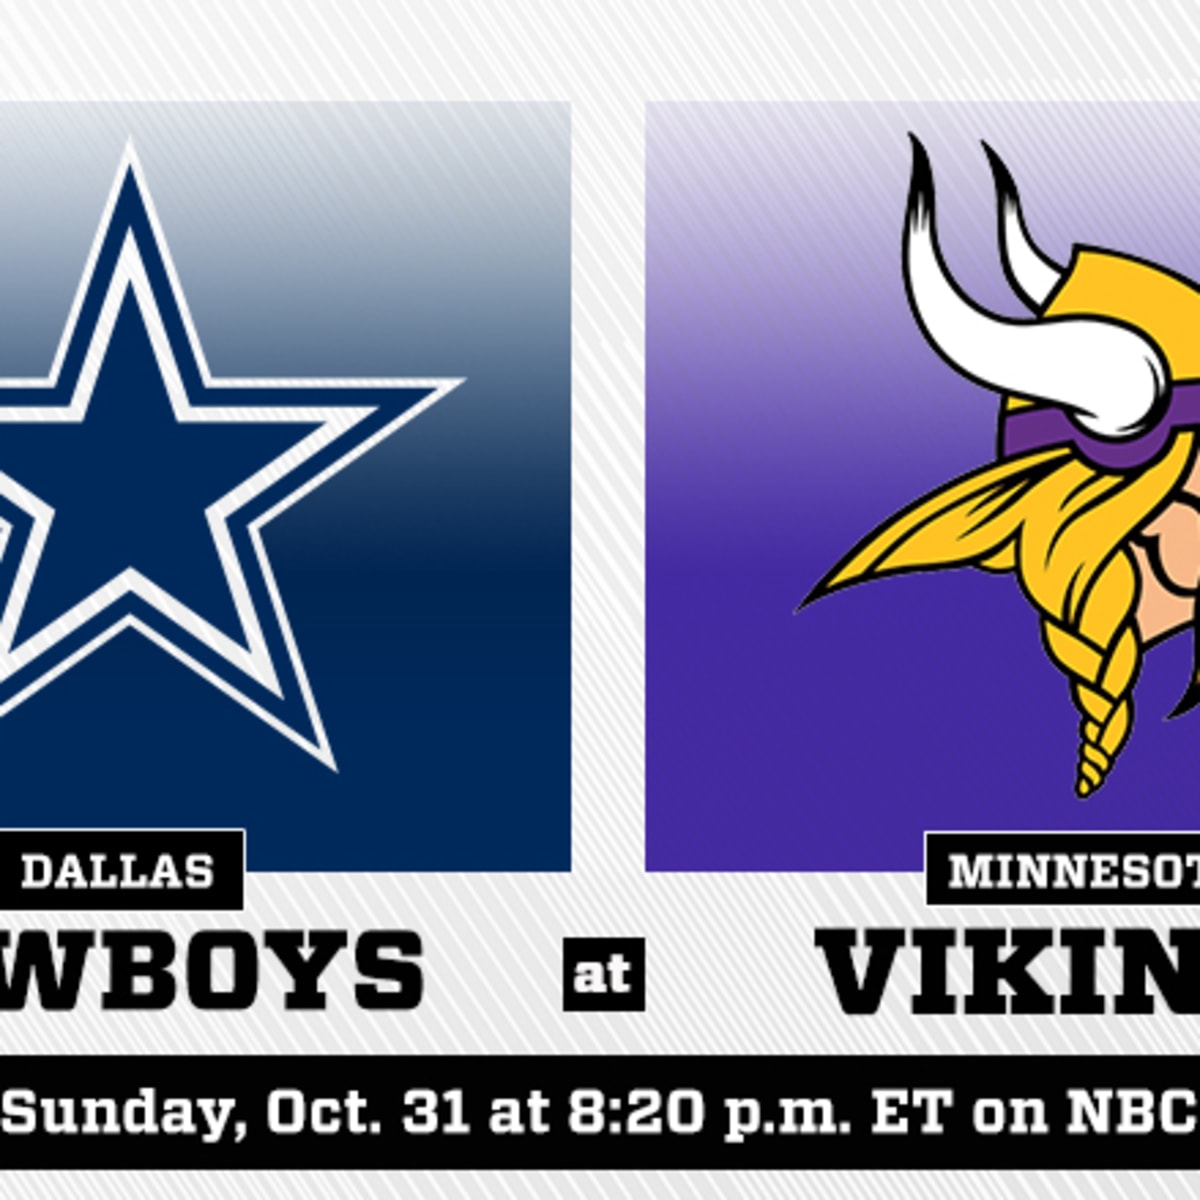 Vikings vs Cowboys live score & H2H